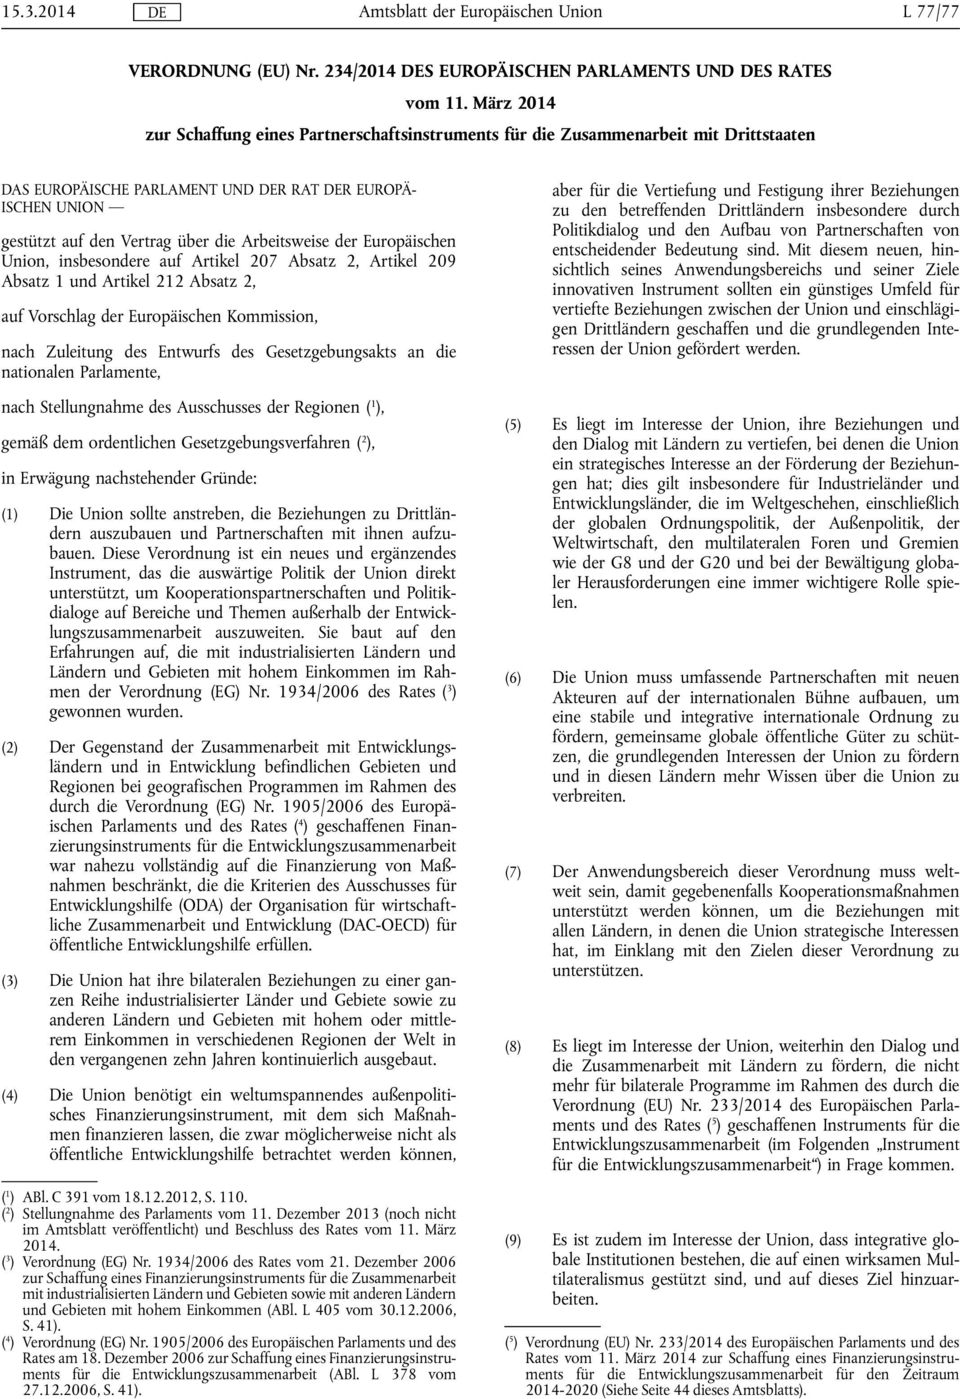 Arbeitsweise der Europäischen Union, insbesondere auf Artikel 207 Absatz 2, Artikel 209 Absatz 1 und Artikel 212 Absatz 2, auf Vorschlag der Europäischen Kommission, nach Zuleitung des Entwurfs des